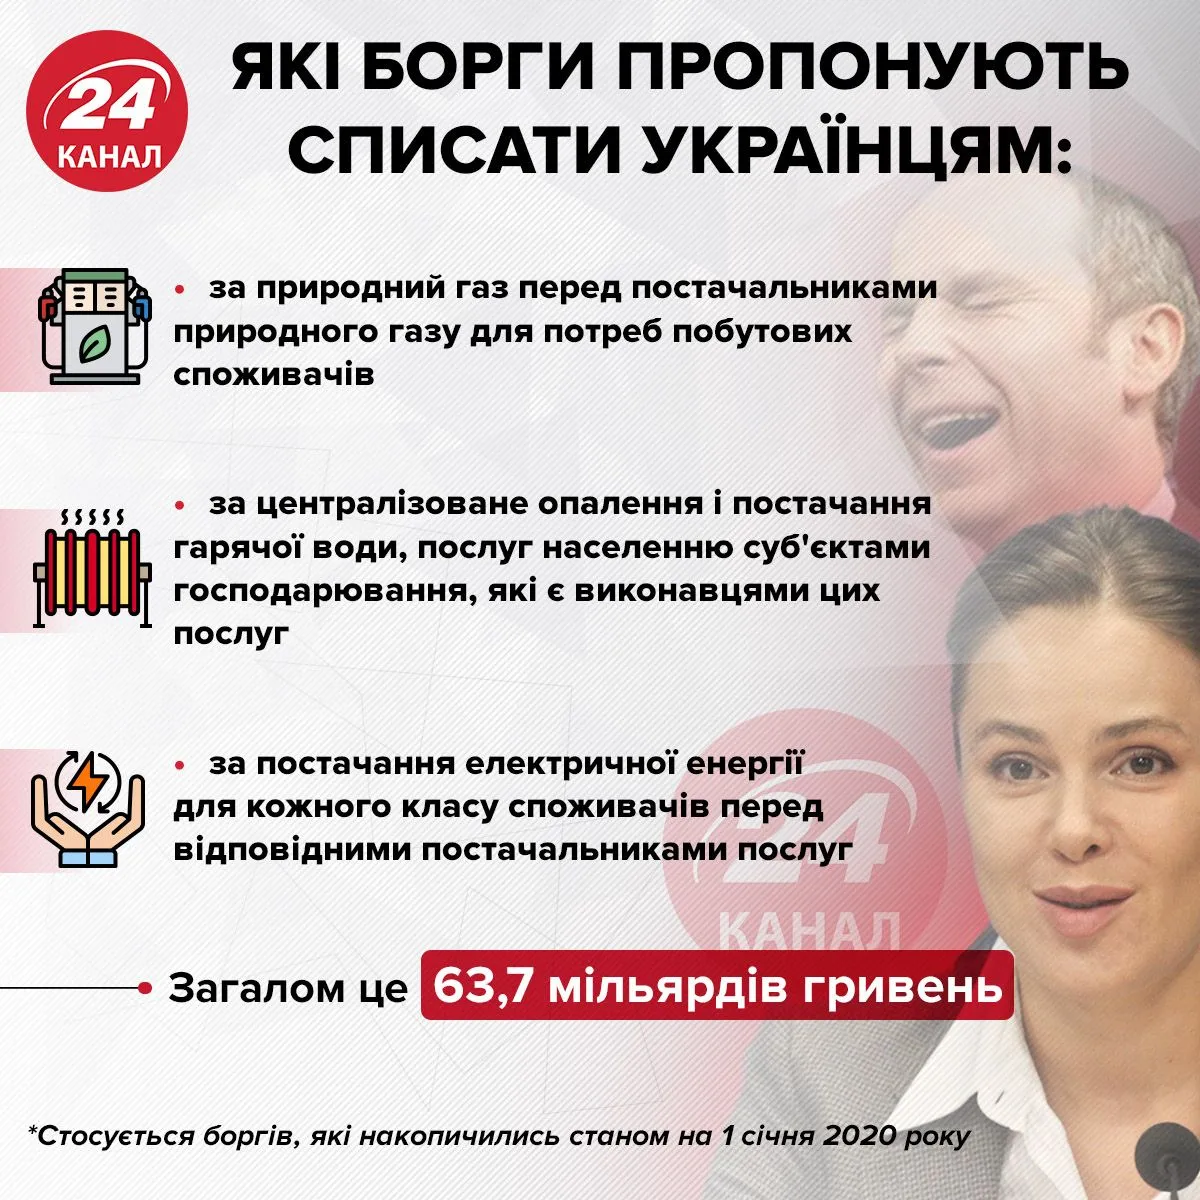 Какие долги предлагают списать украинцам Инфографика 24 канал